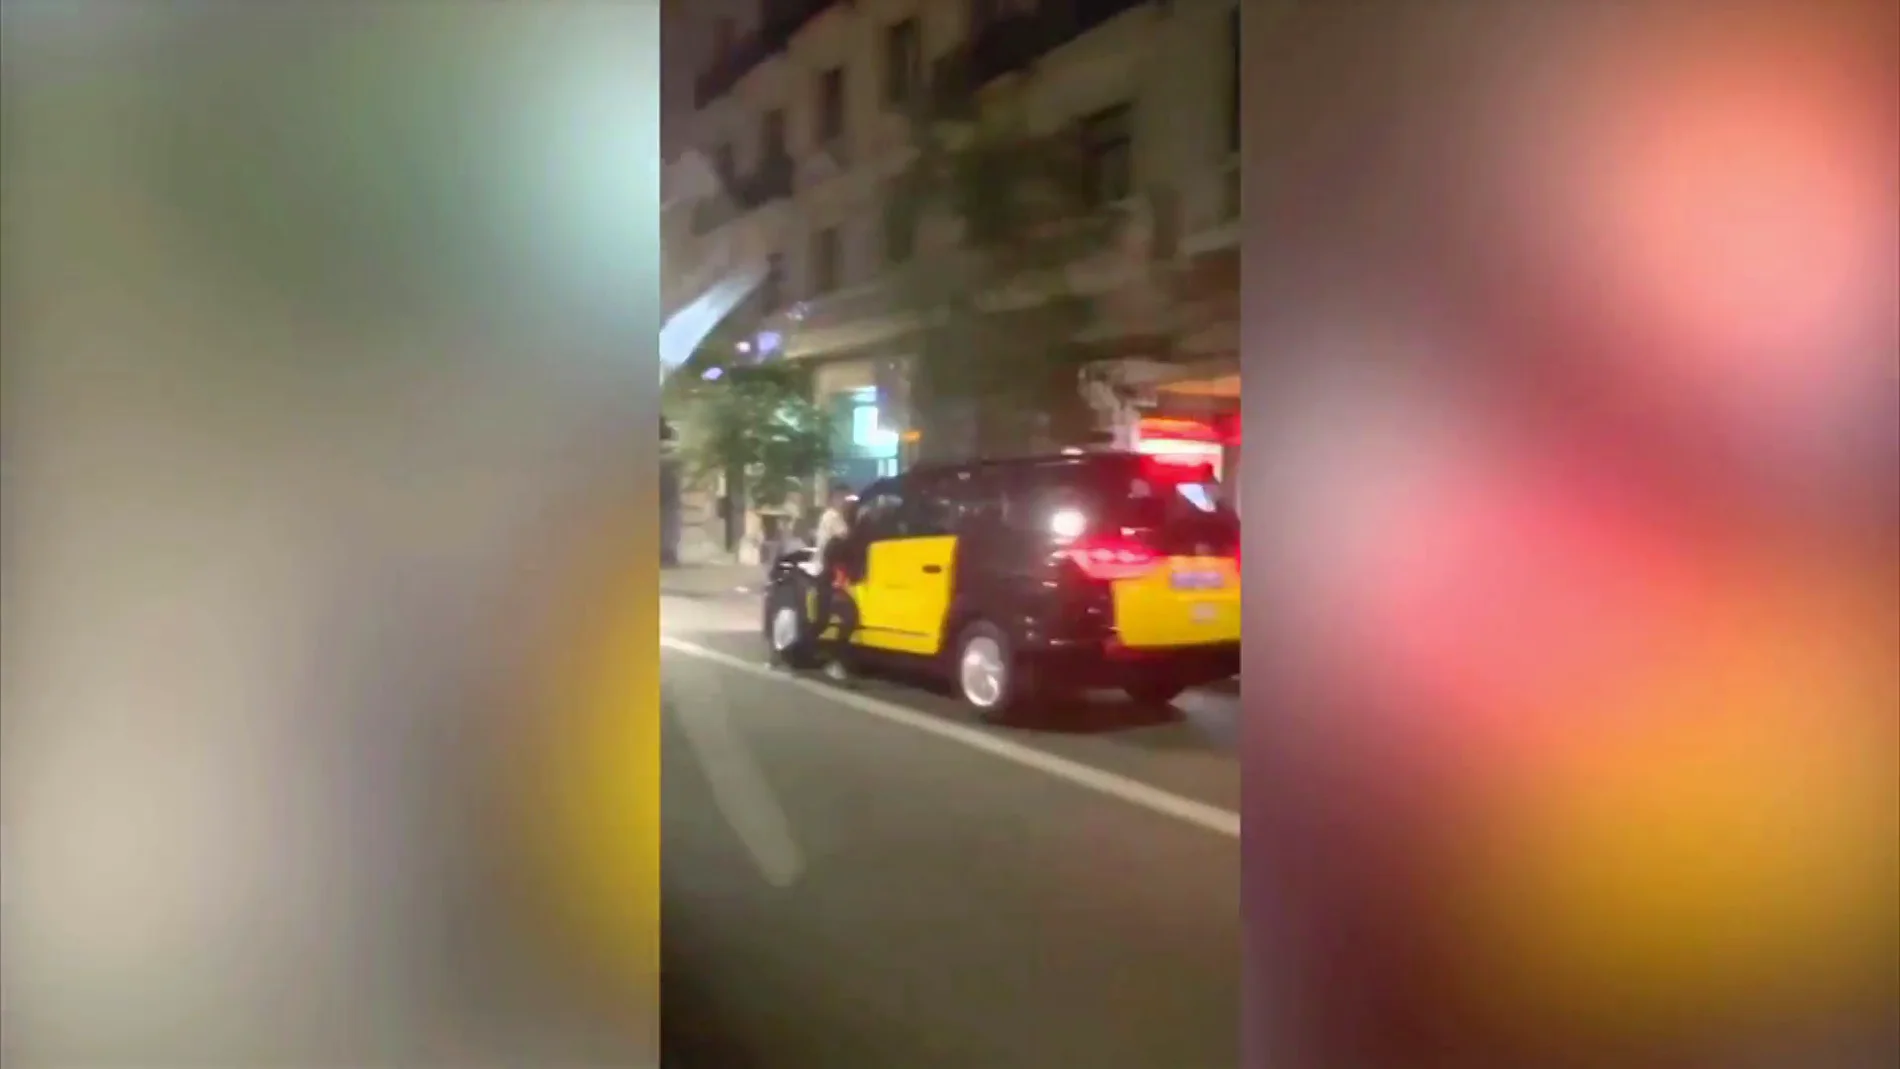 Un taxista atrapa y arrastra a un ladrón que quería robarle el móvil en Barcelona